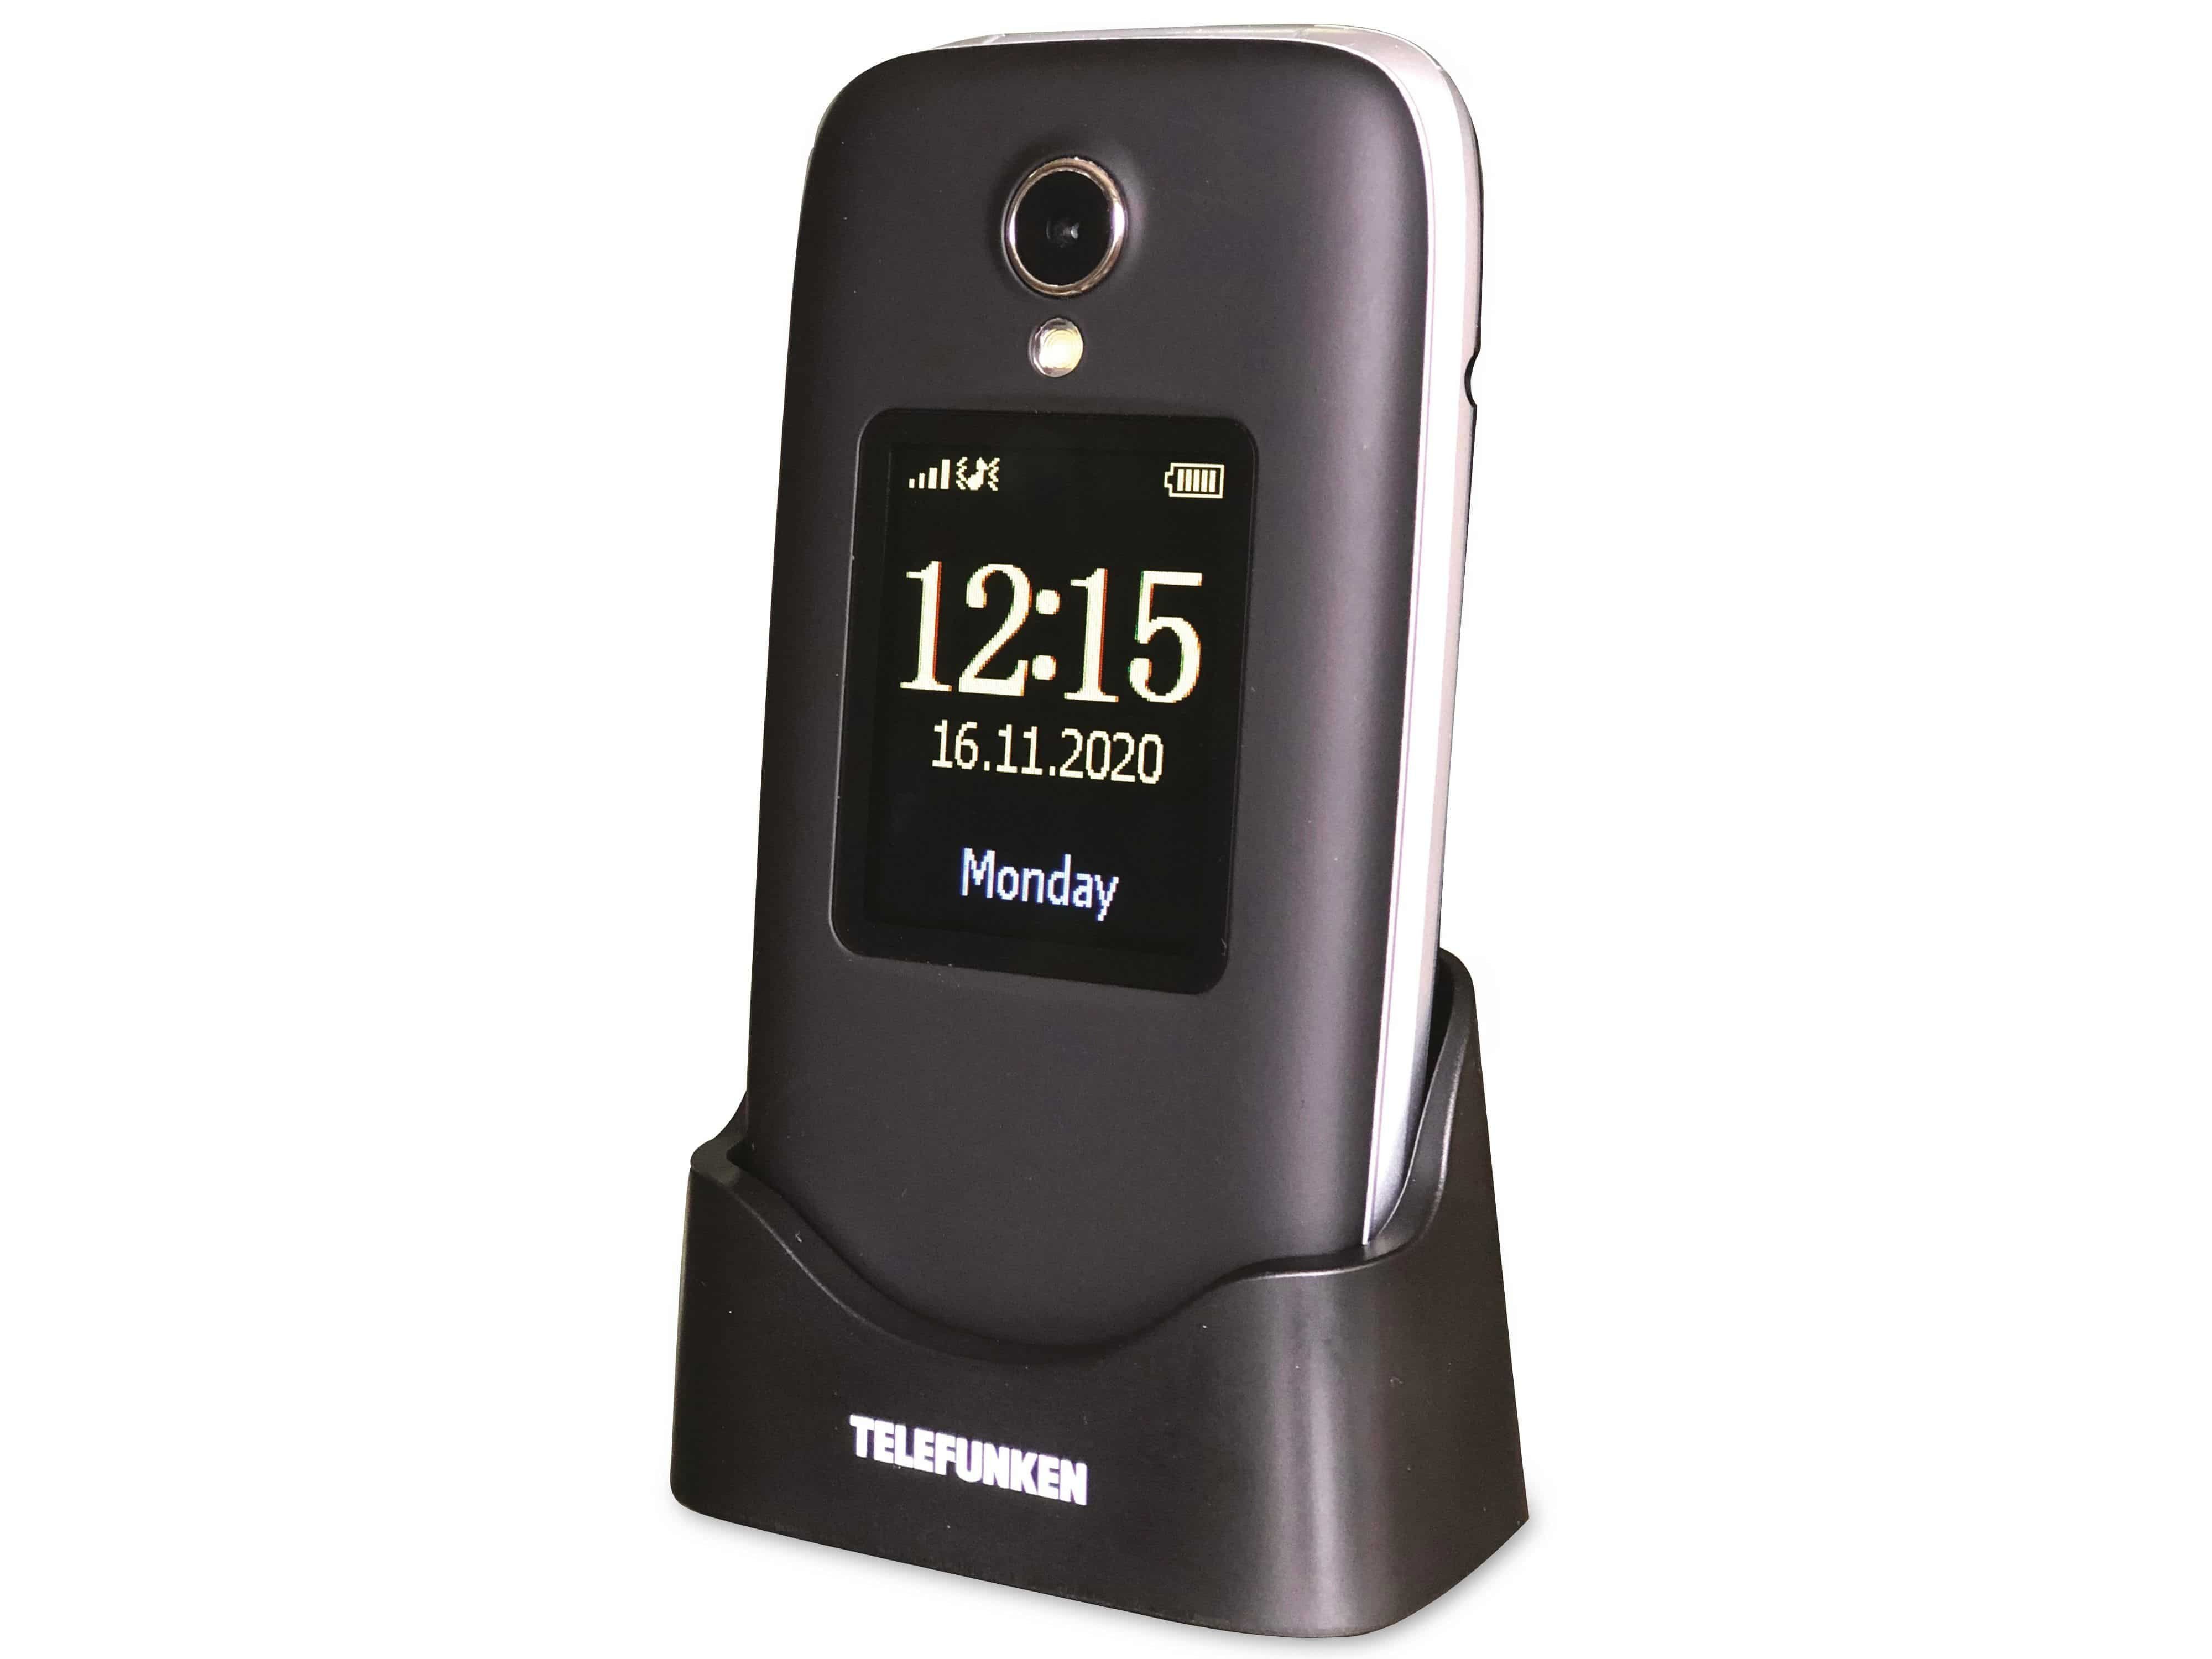 Telefunken TELEFUNKEN Handy S560, schwarz Handy